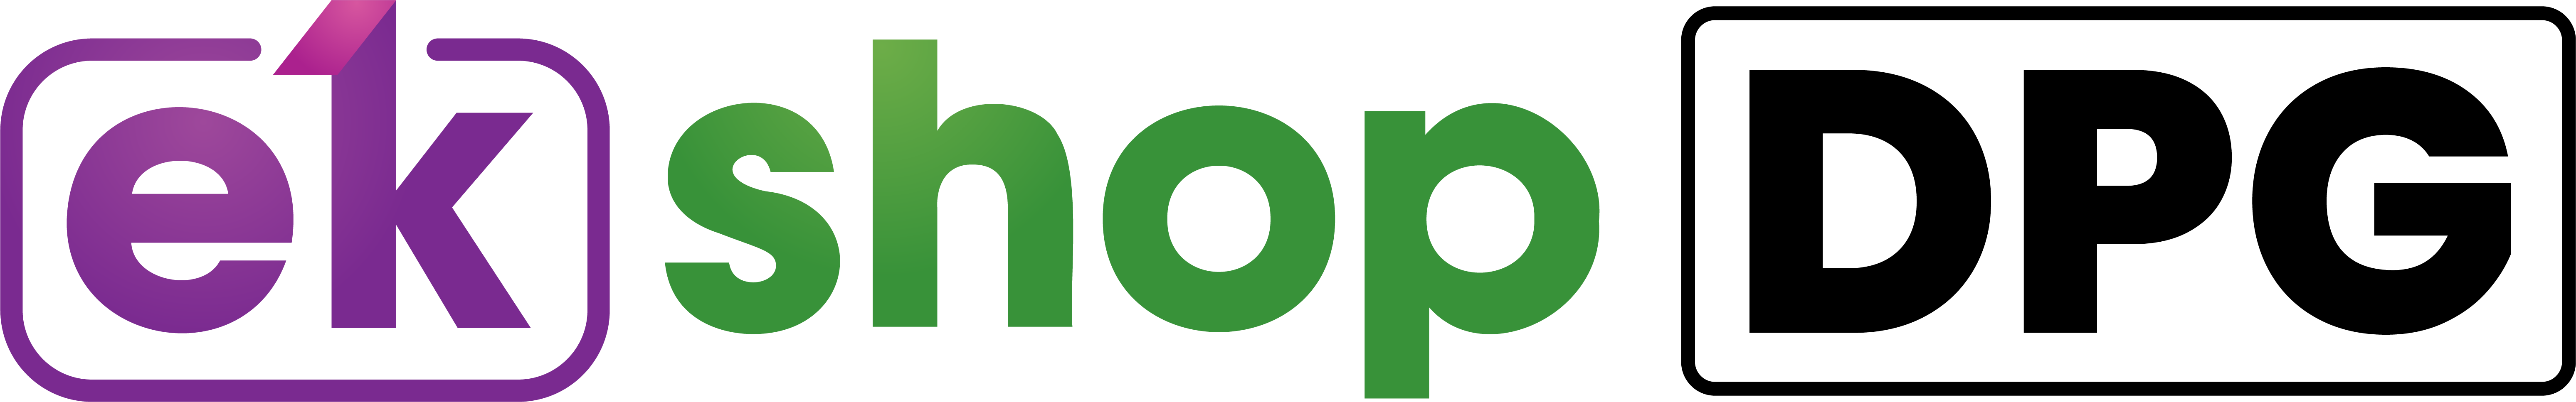 ekShop DPG logo